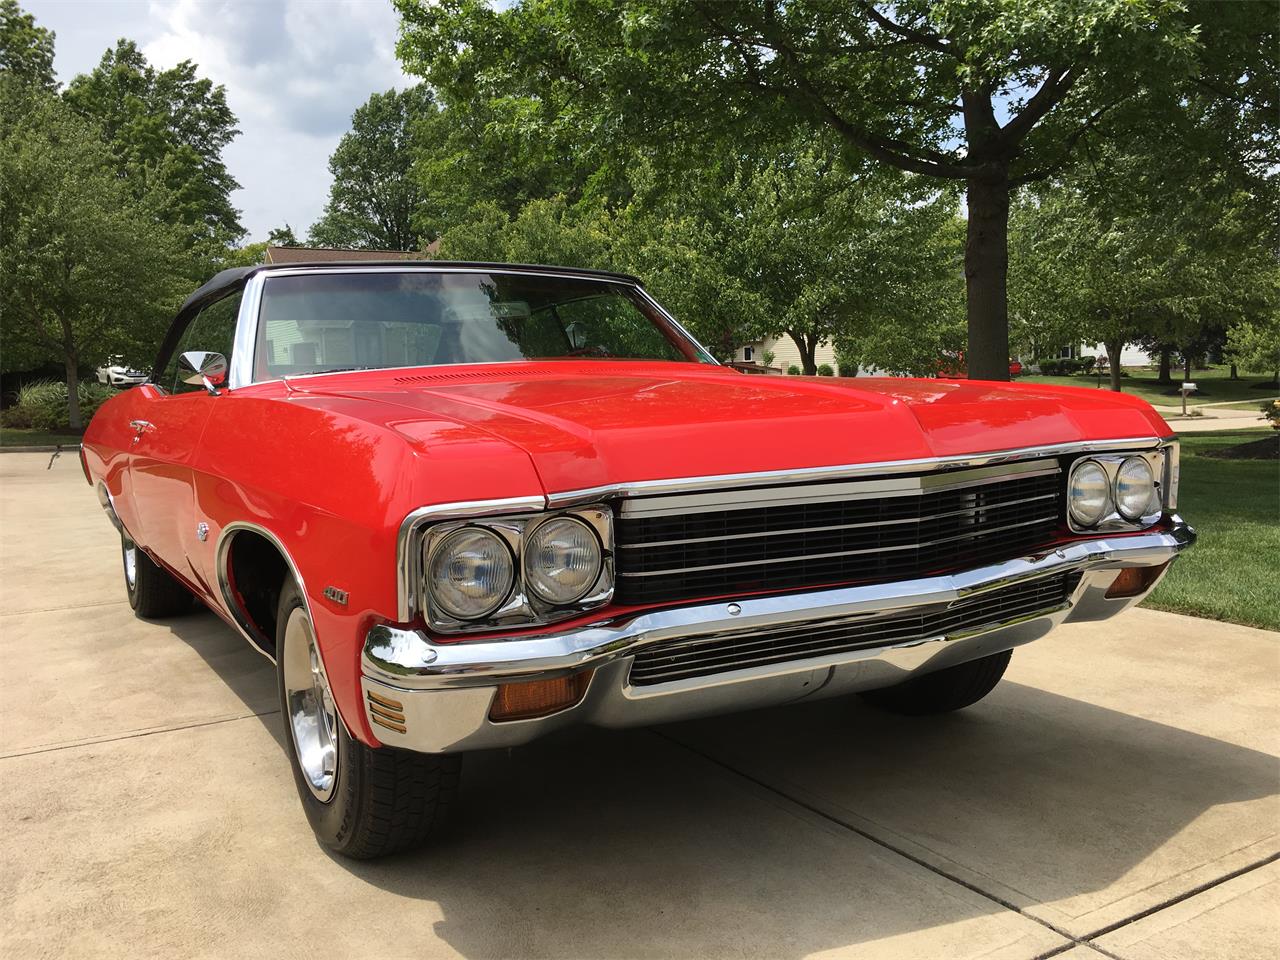 1970 Chevrolet Impala for Sale | ClassicCars.com | CC-997485